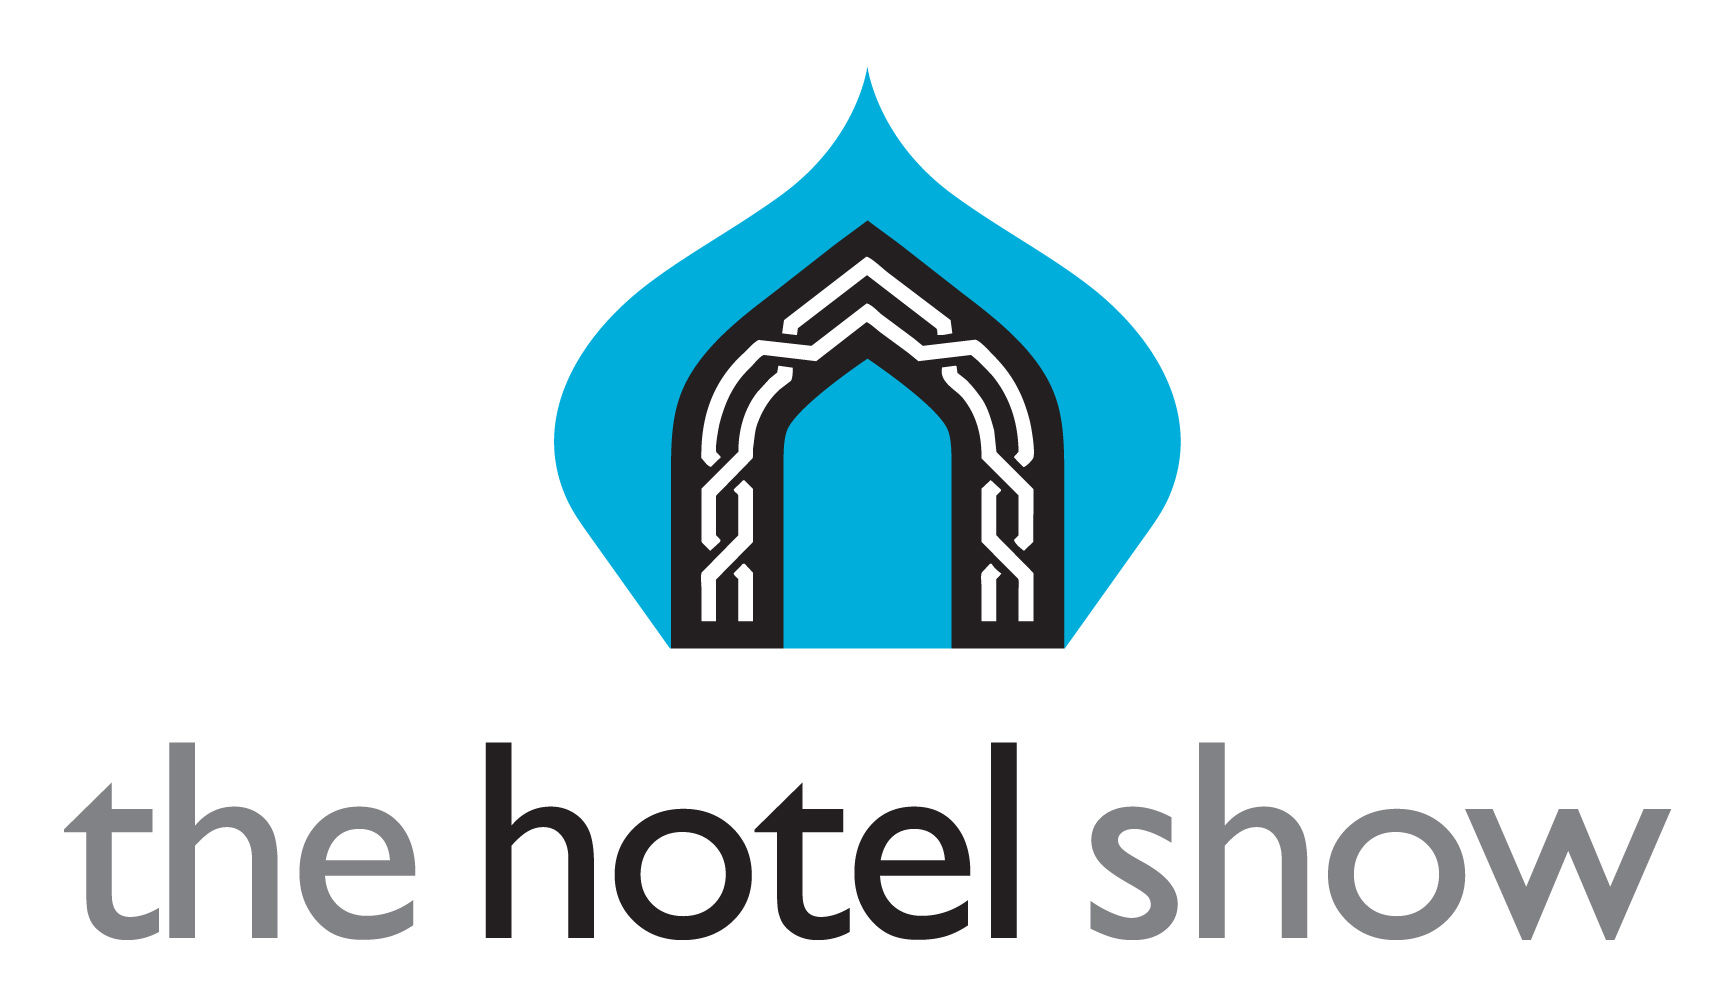 Отель show. Dubai International Convention and Exhibition Centre (DICEC). Hotel show. Отель Восток логотип. The Dubai International Boat show logo.